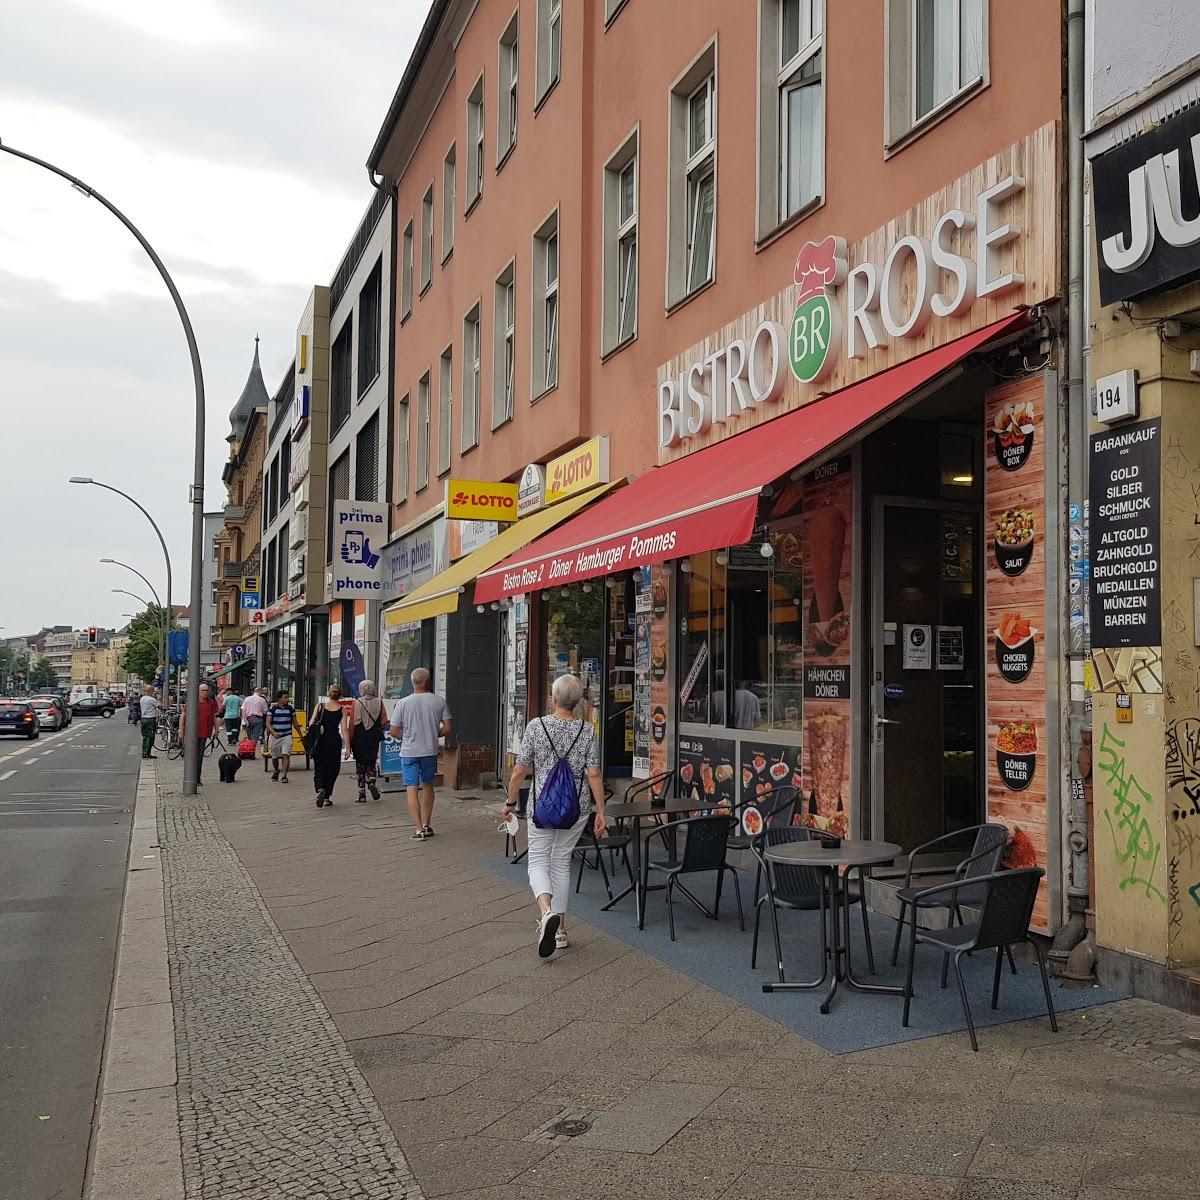 Restaurant "Bistro Rose" in Berlin